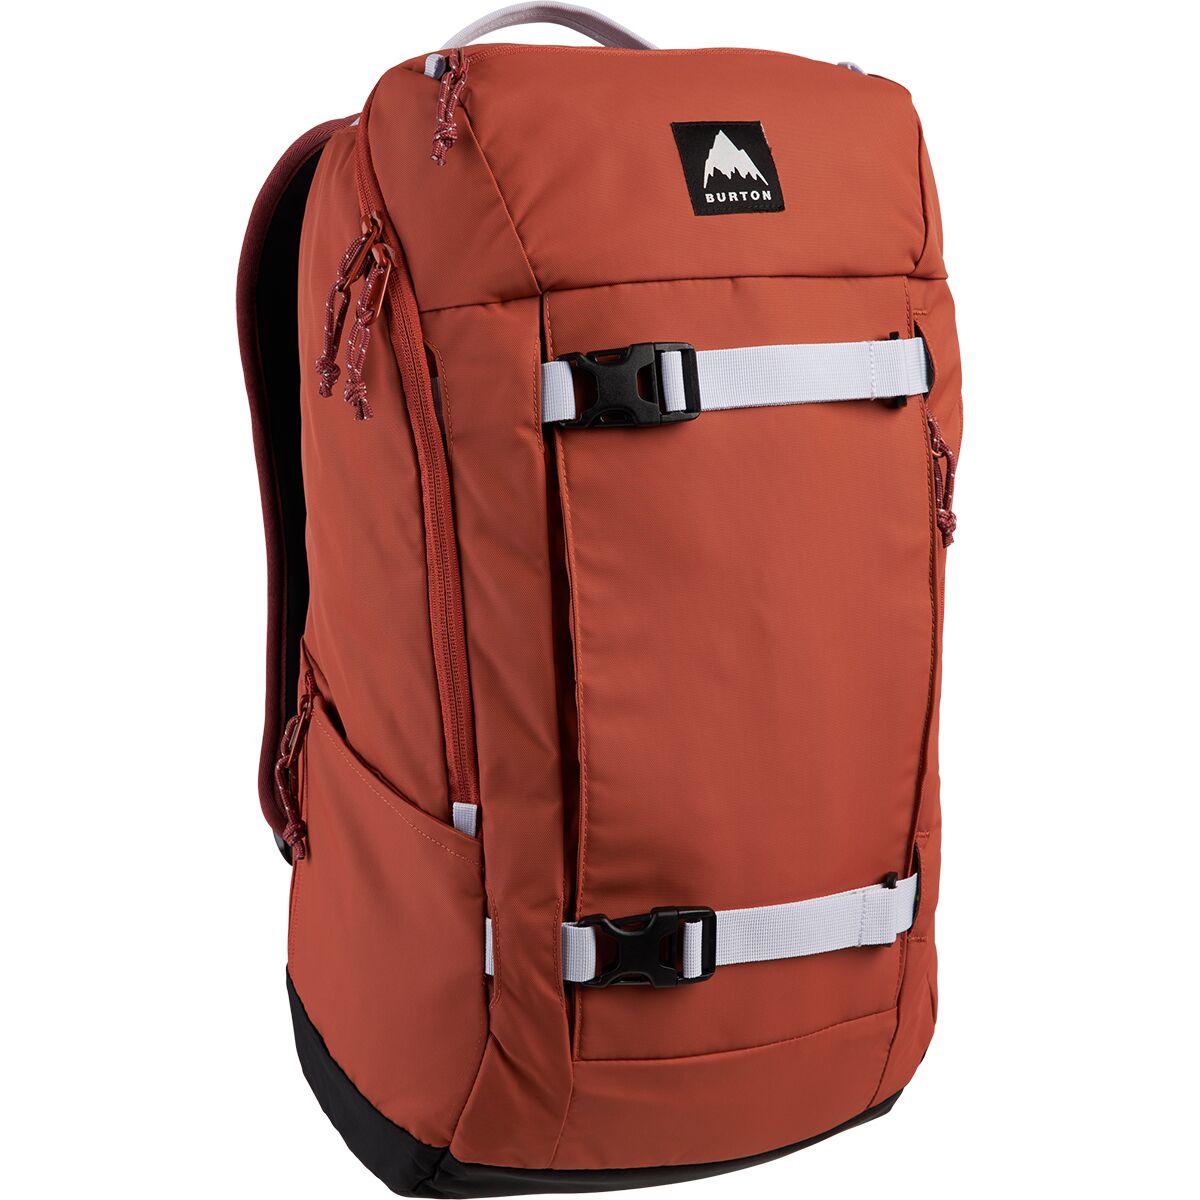 Burton Kilo 2.0 27L Backpack - Accessories